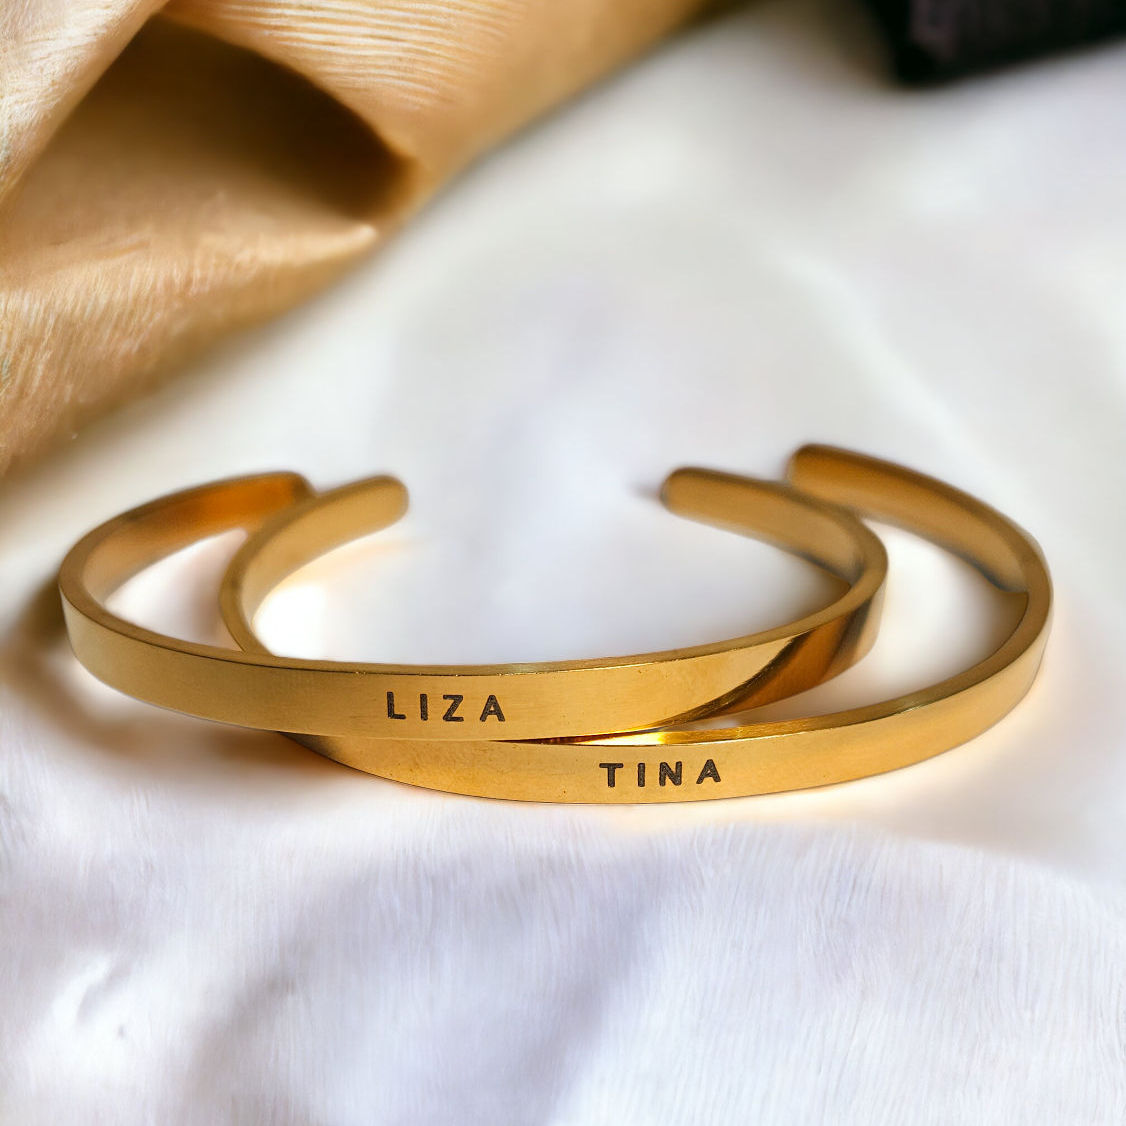 name bracelet, party favor bracelet,party favor, personalized bracelet,  gift for girl, person…